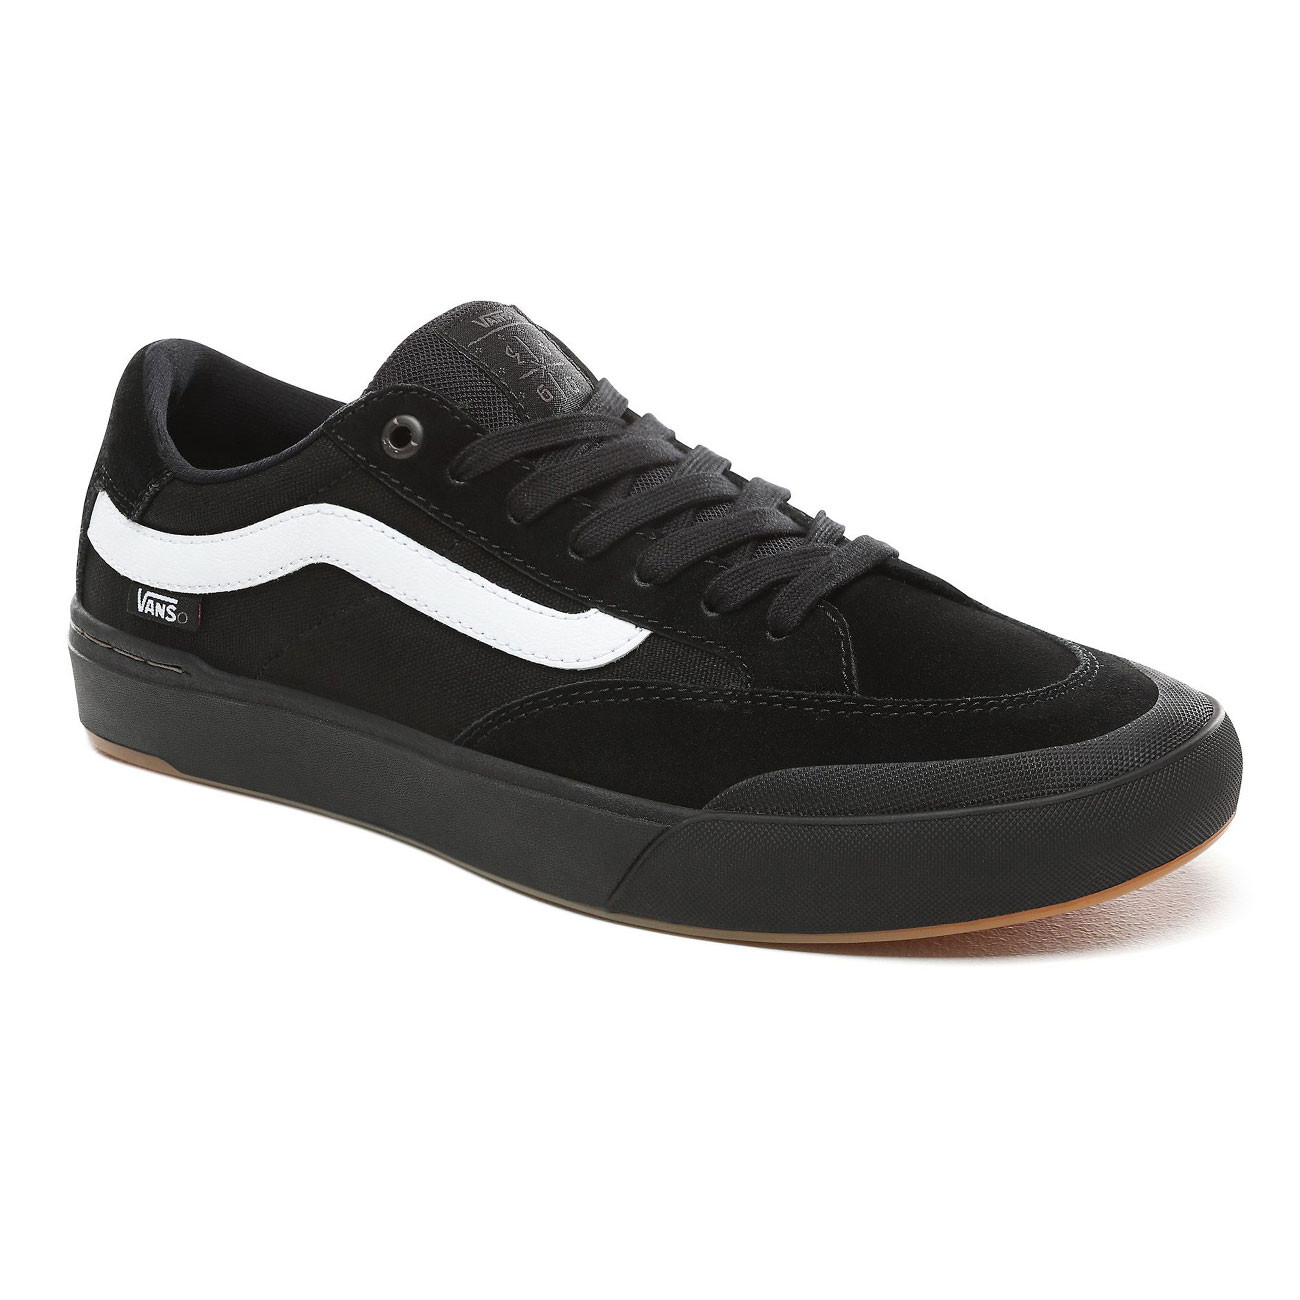 Sneakers Vans Berle Pro black/black 